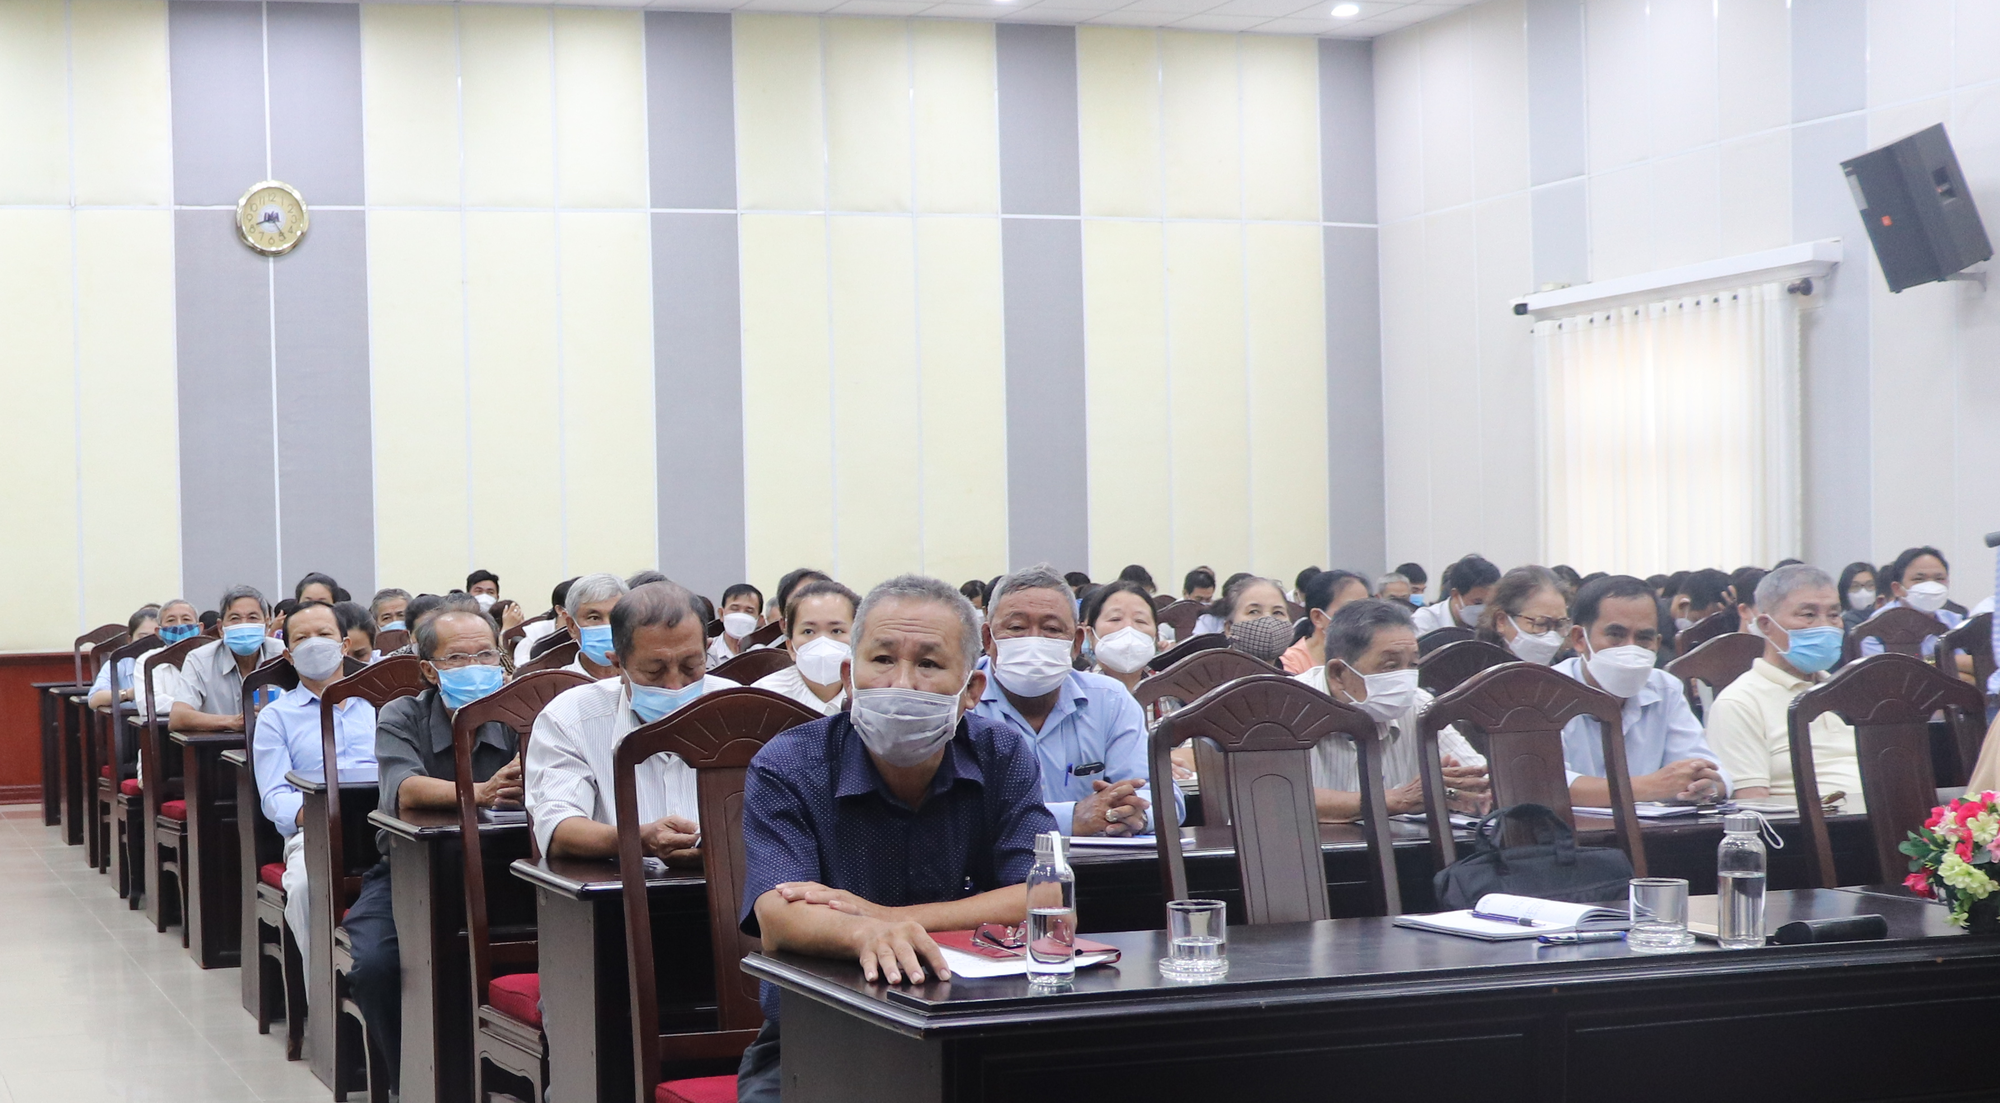 Bình Thuận: Hàng trăm nông dân đi học cách tuyên truyền về an toàn giao thông  - Ảnh 3.